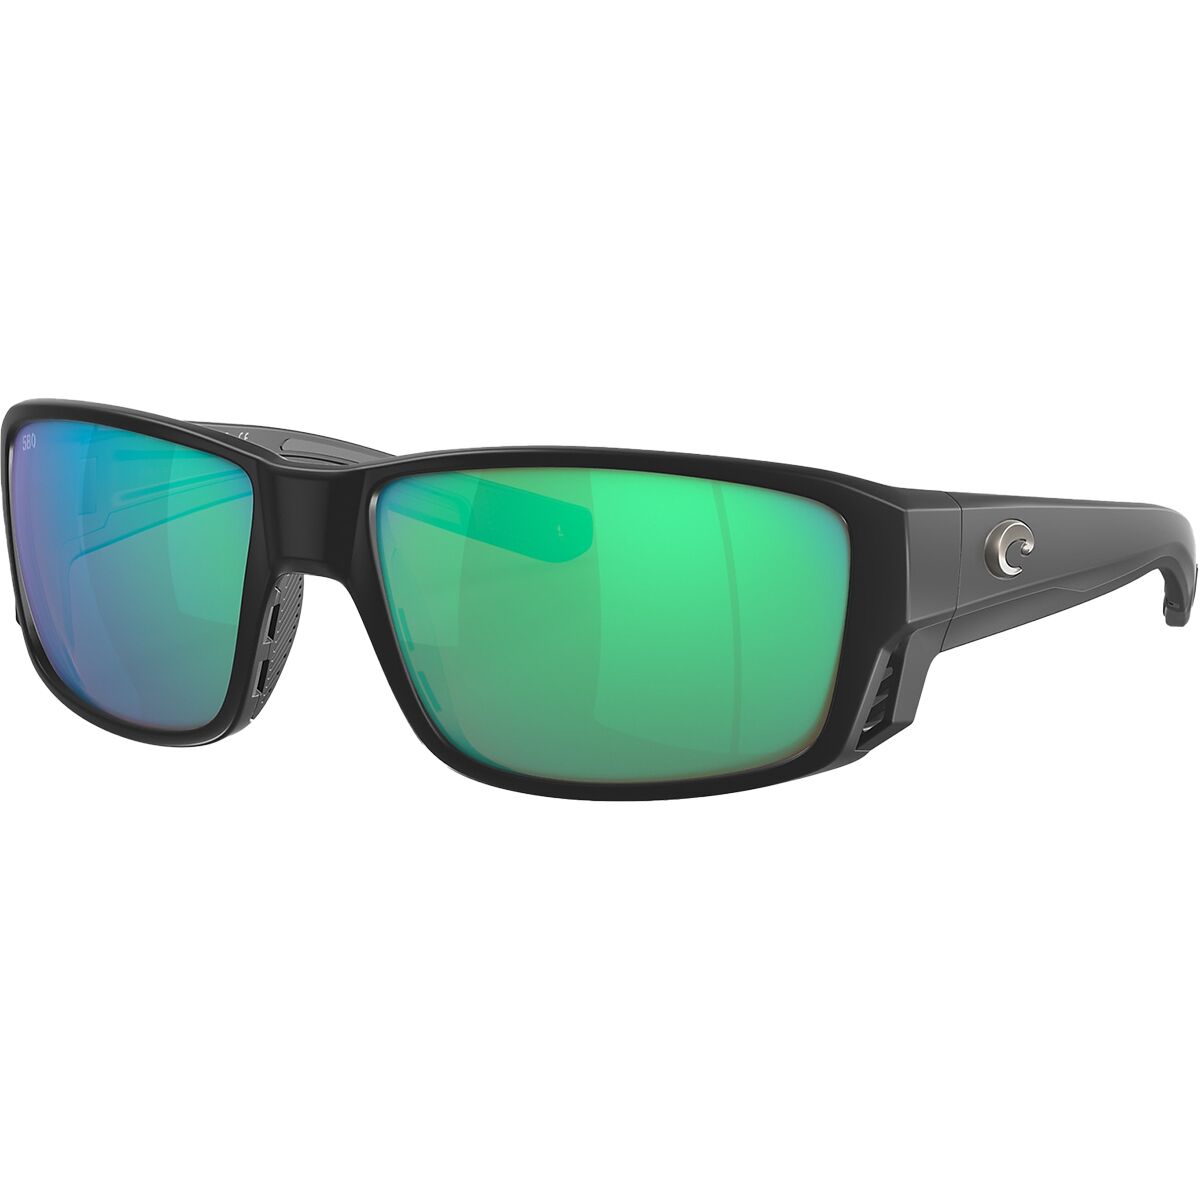 Costa Tuna Alley 580G Polarized Sunglasses